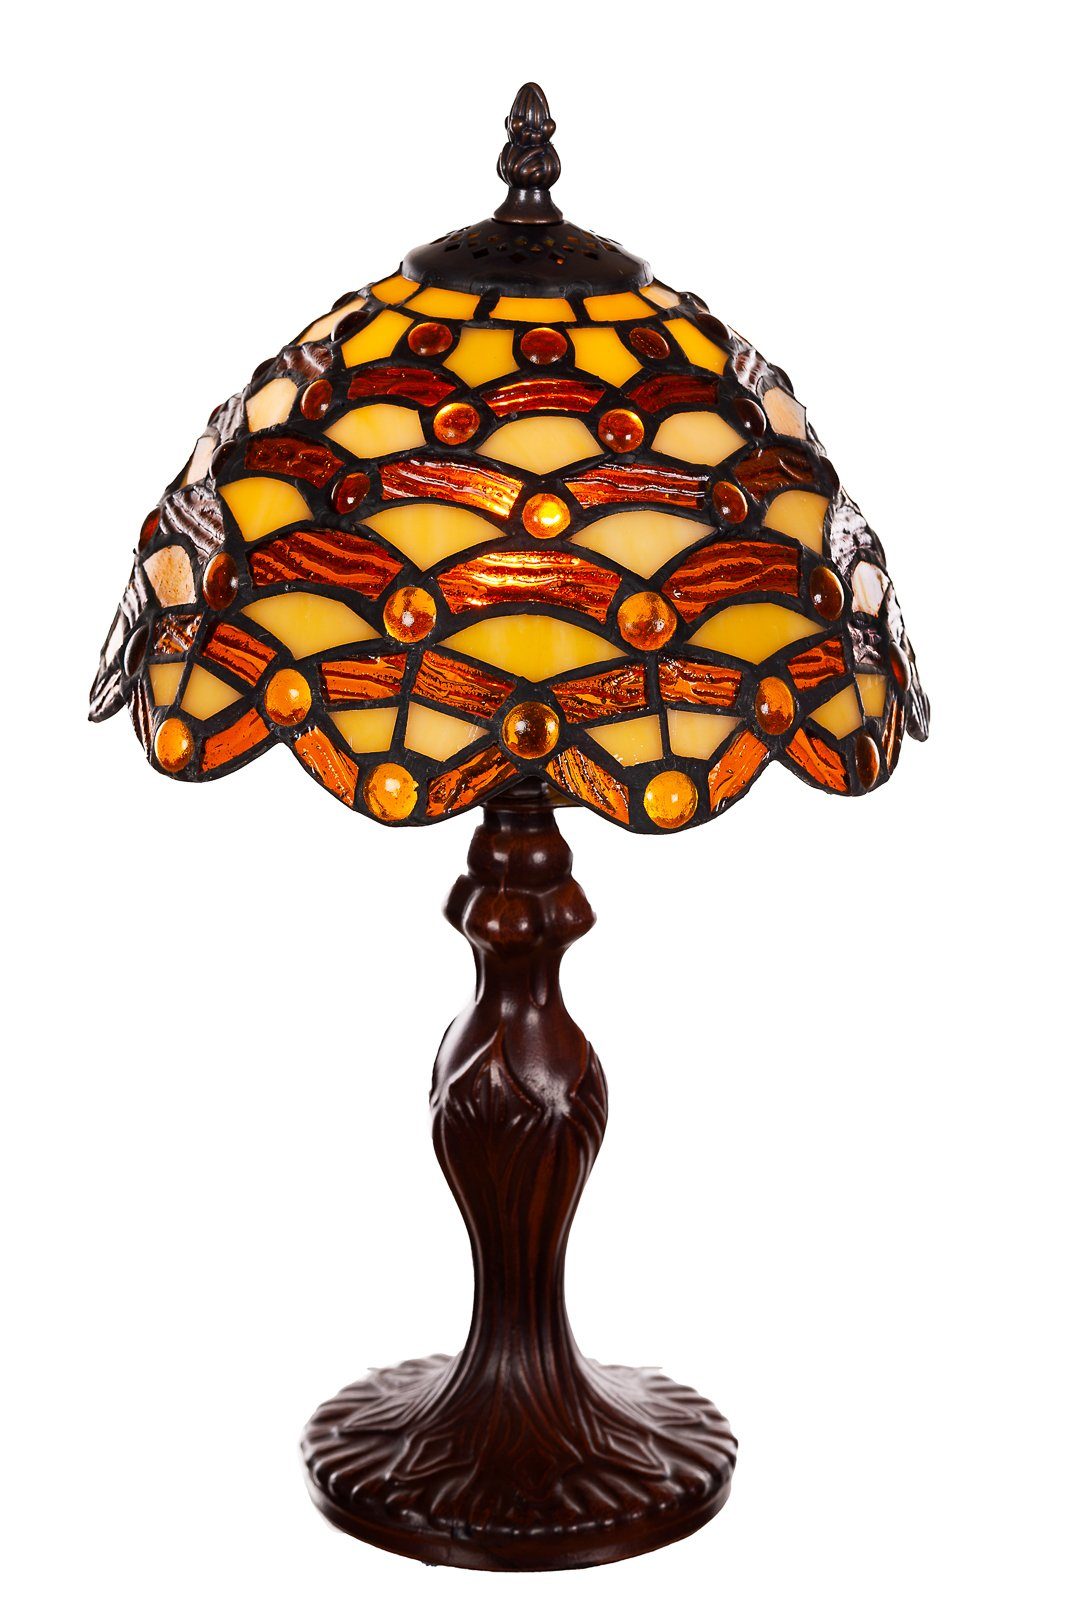 Motiv Ti156 BIRENDY Lampe Waben Steine Tiffany Tischlampe Dekorationslampe Stehlampe